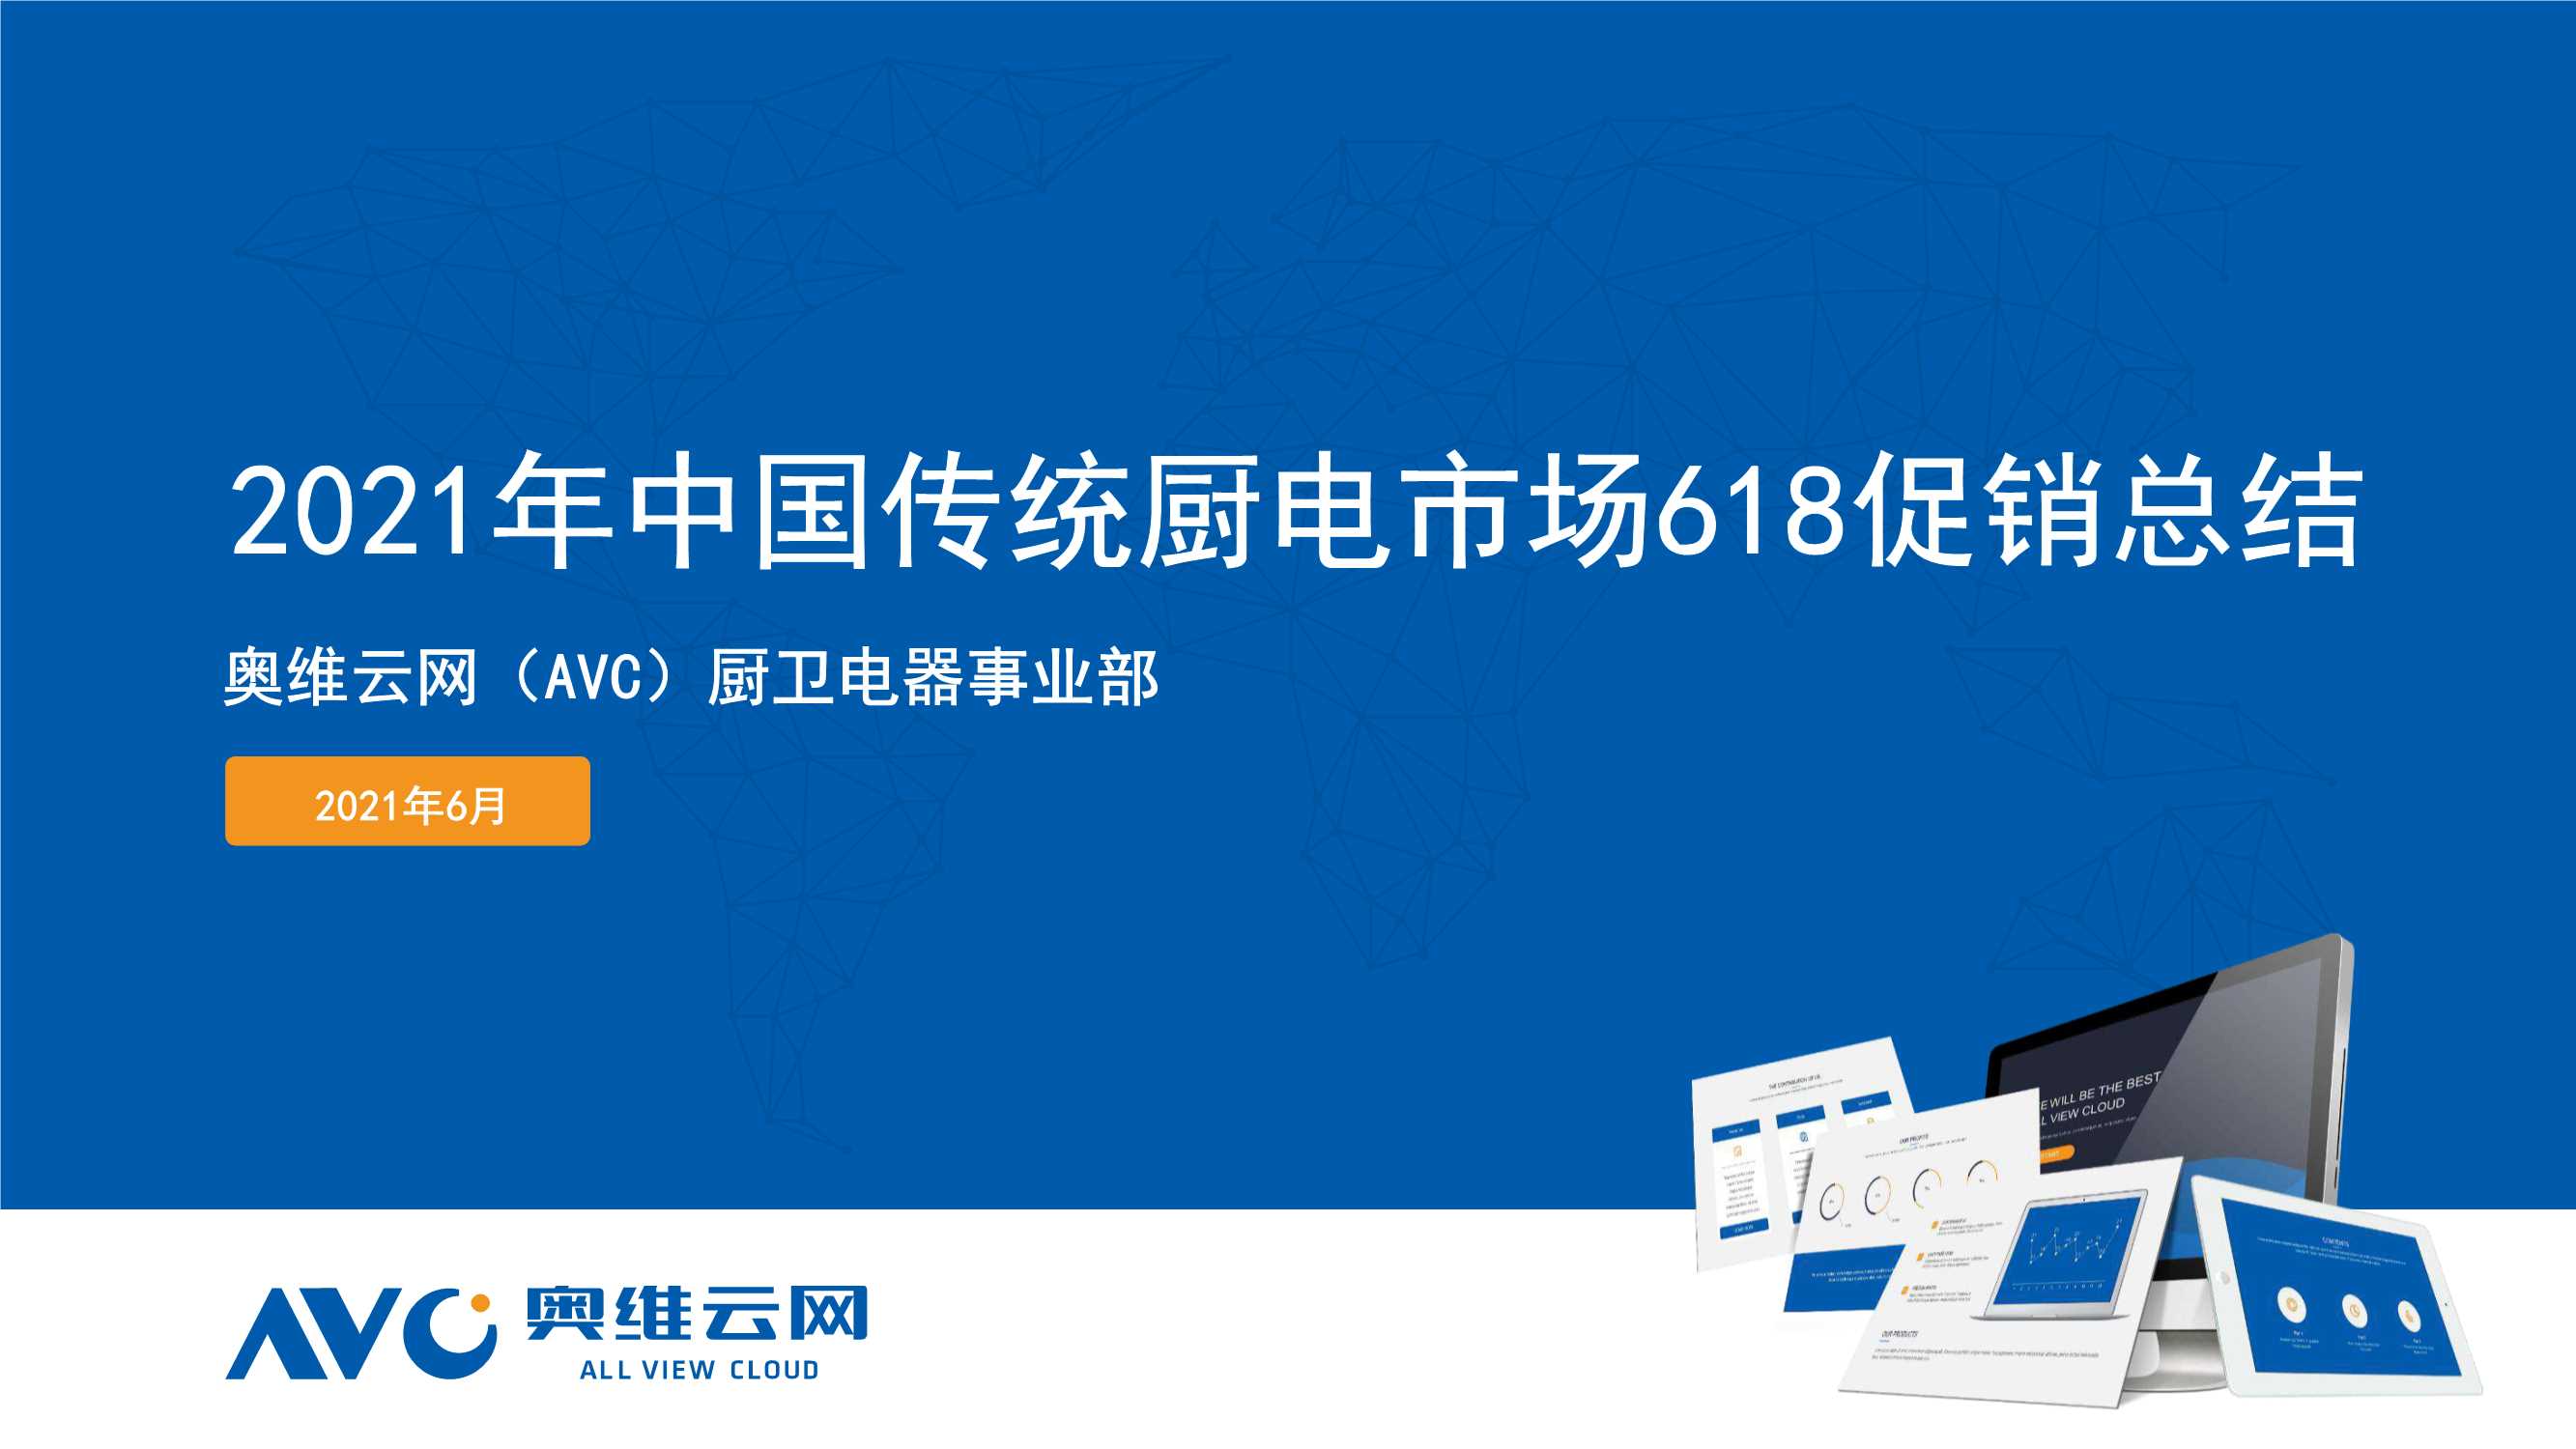 奥维云网-2021年中国传统厨电市场618促销总结-2021.07-29页